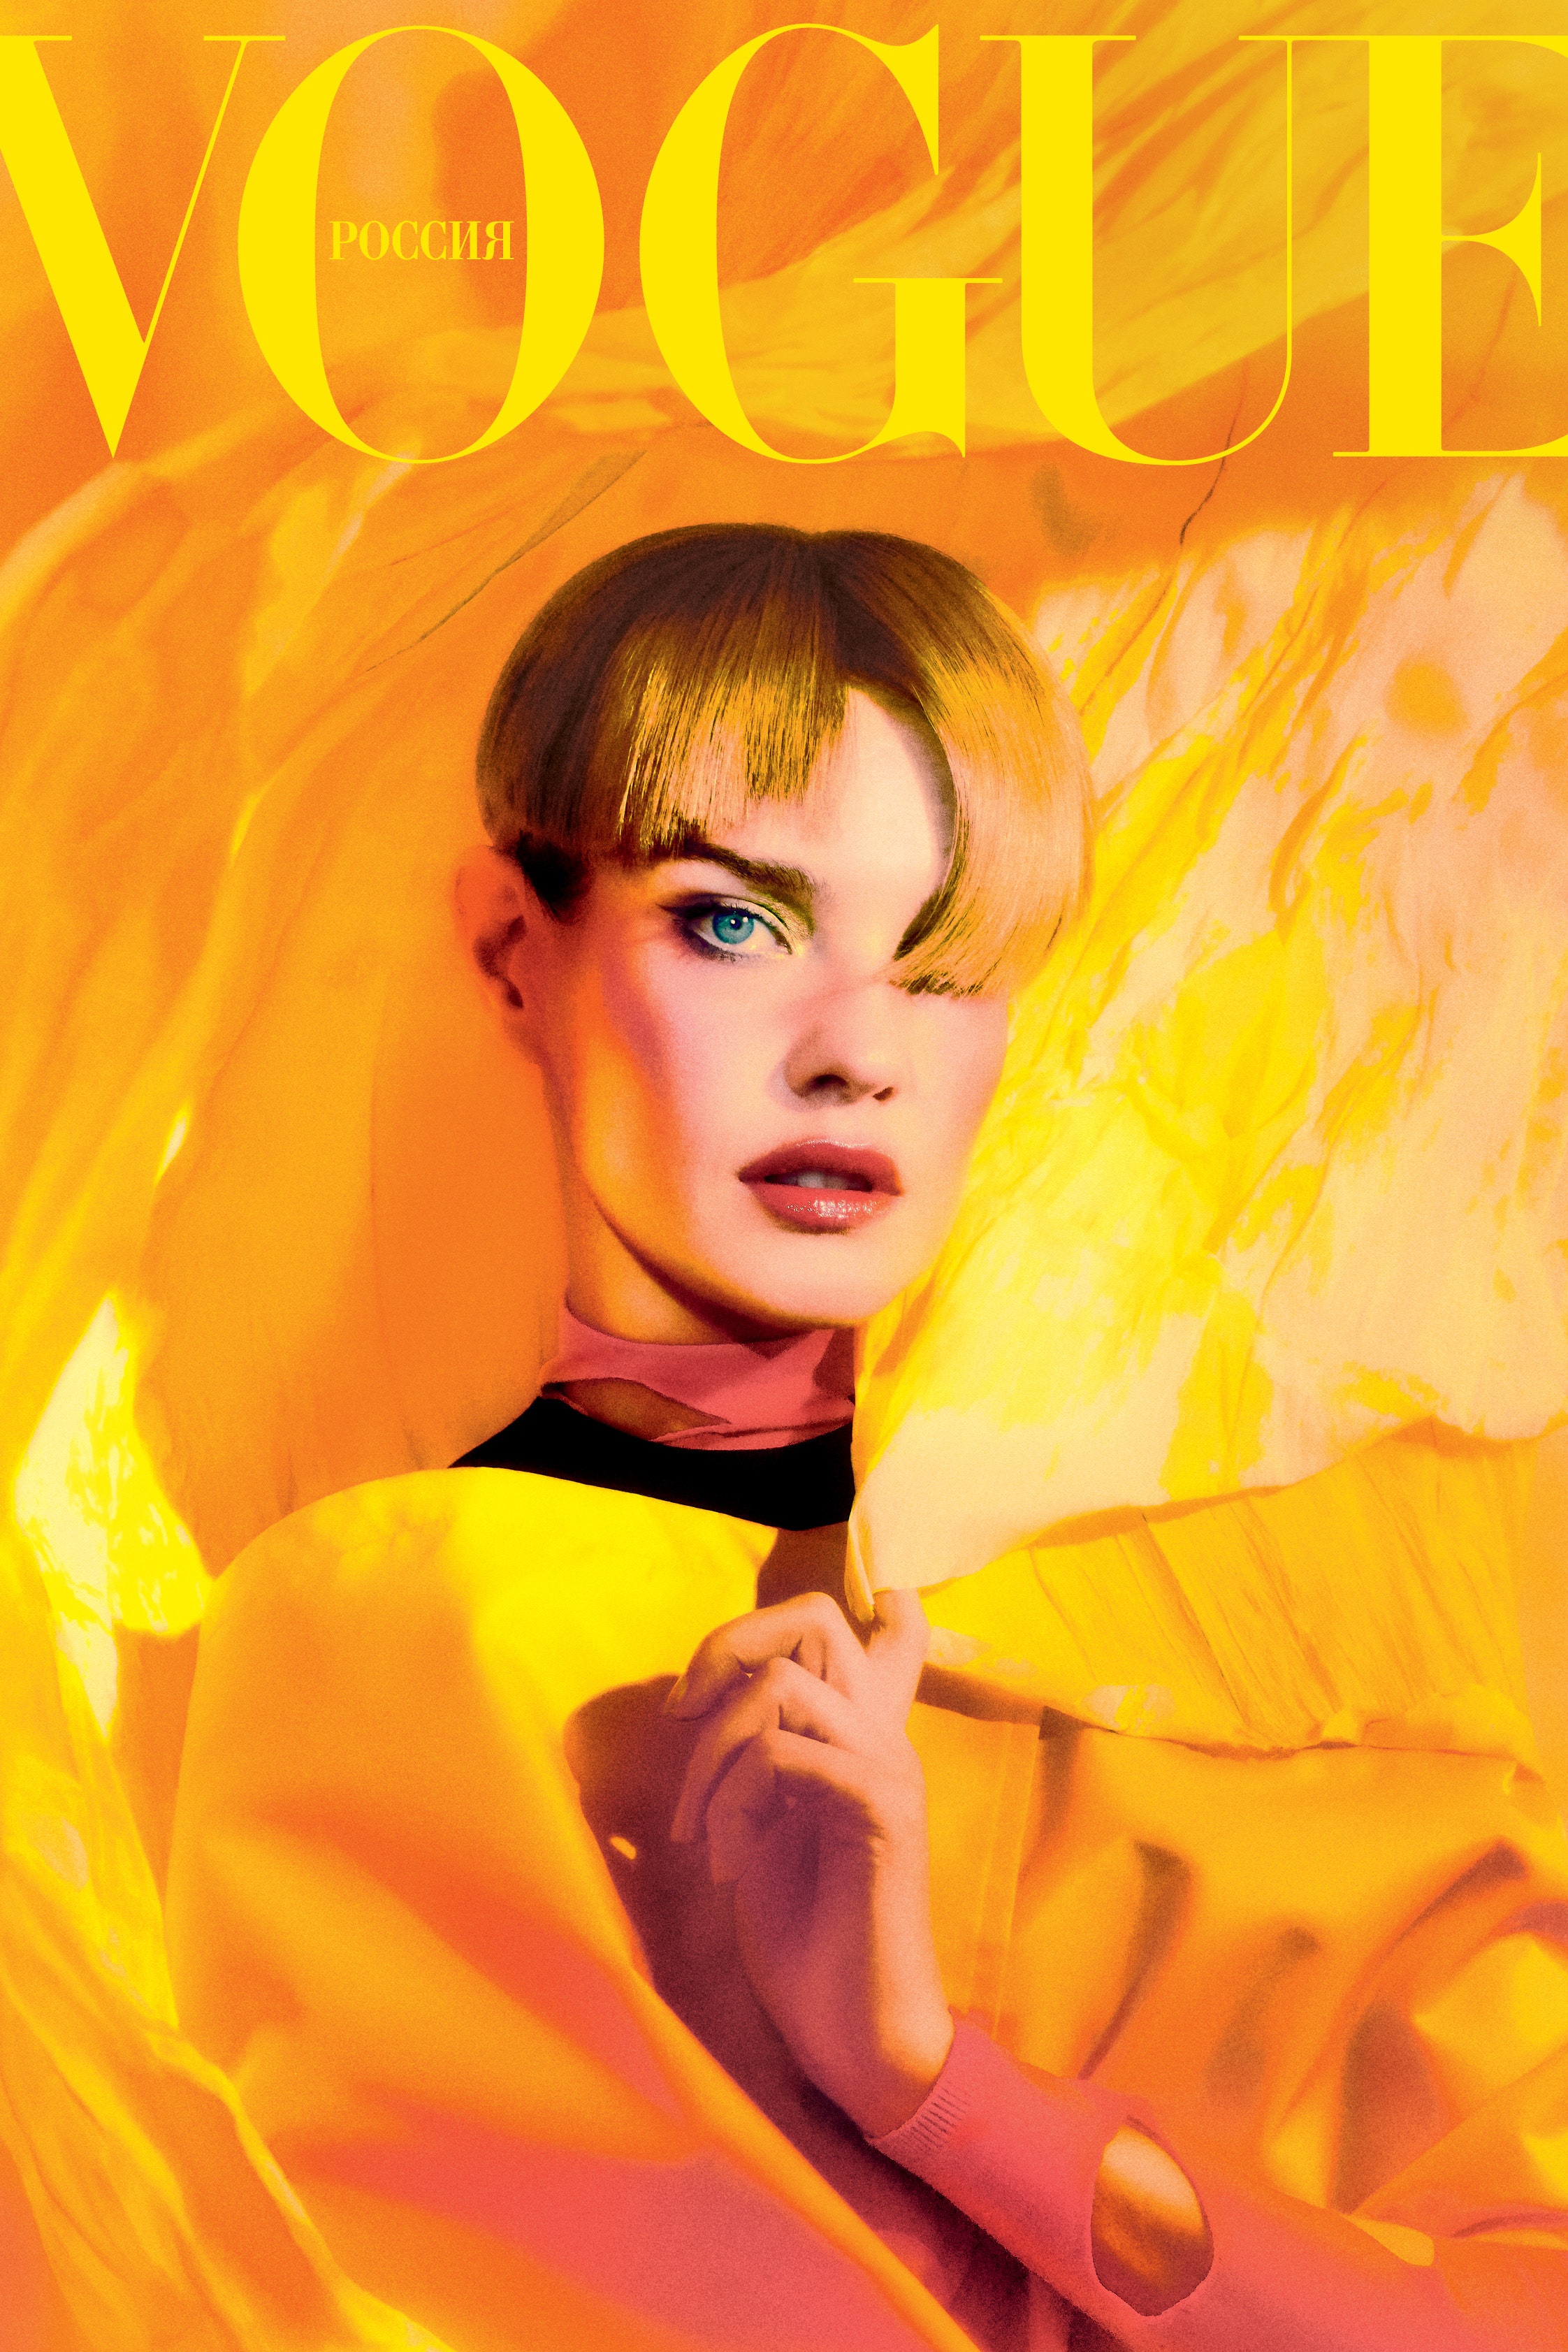 Красьте желтые тени как героиня мартовской обложки Vogue Наталья Водянова